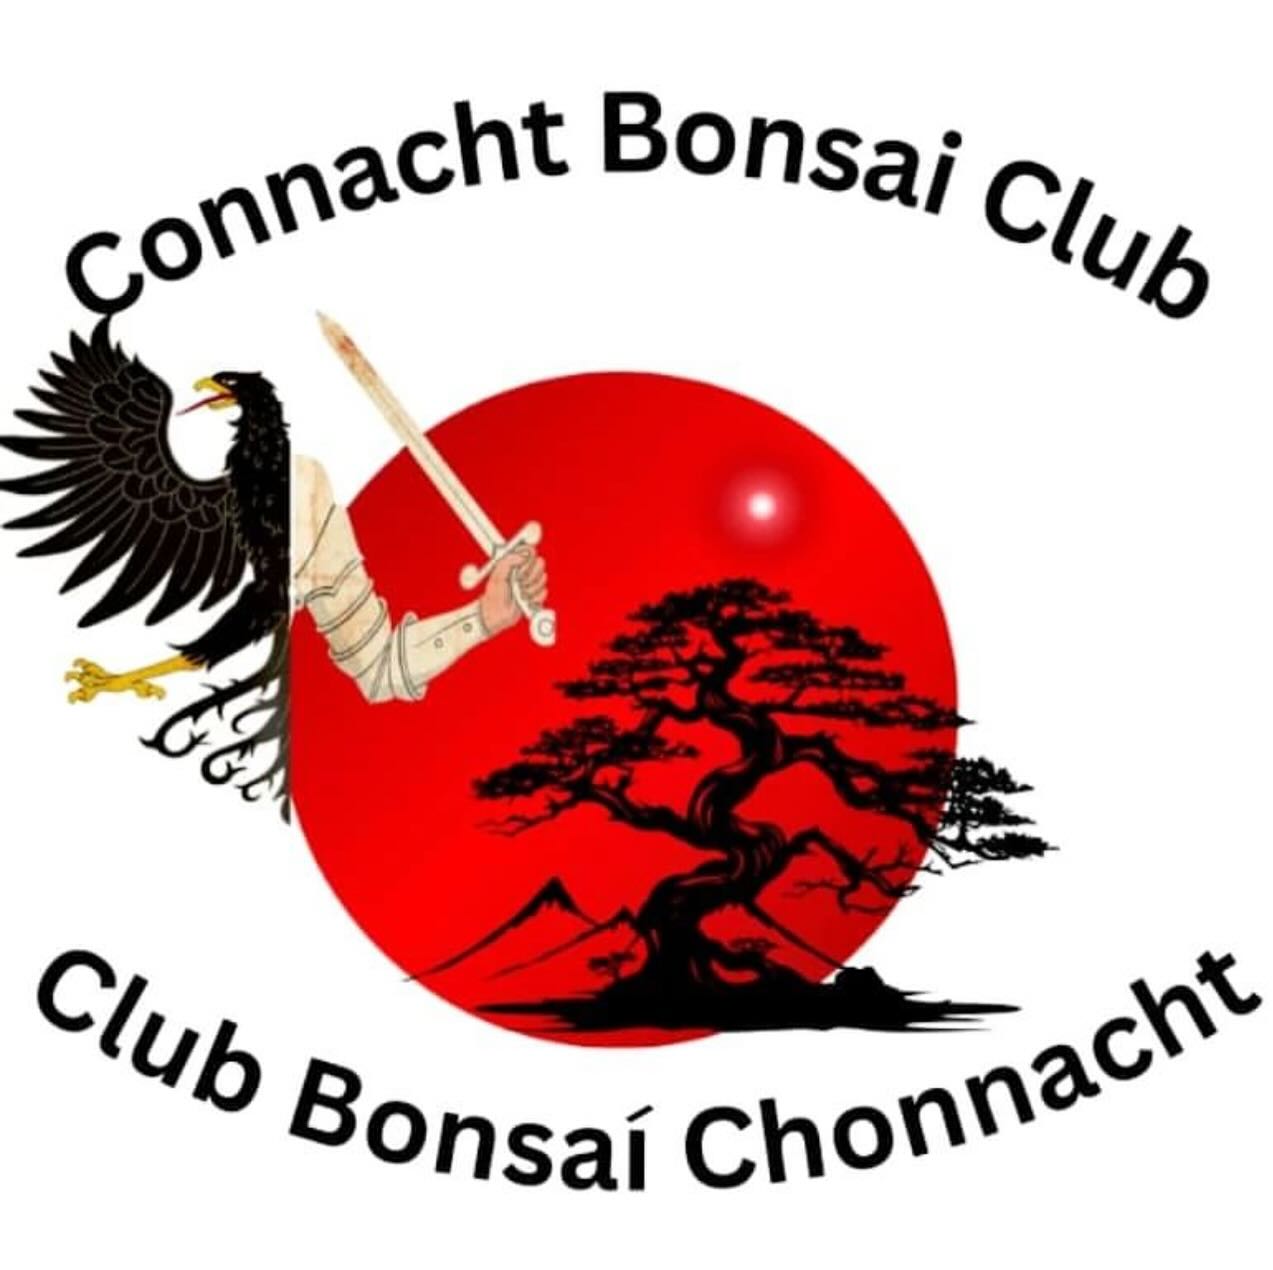 New Bonsai Club for Connaught